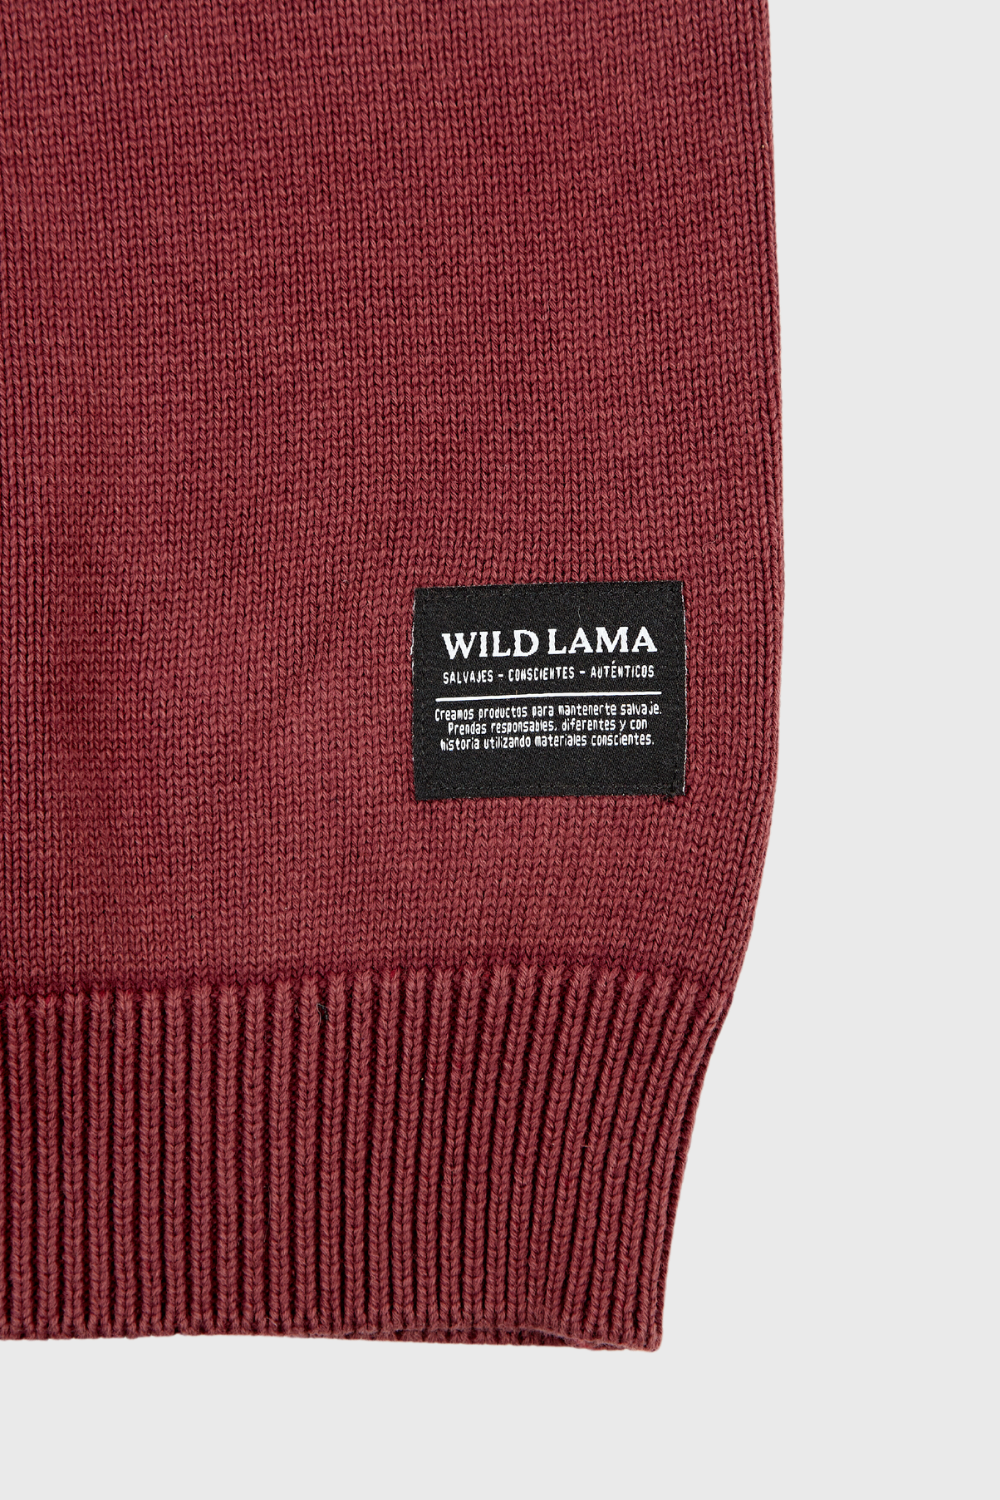 Sweater Tros Orgánico Burdeo Hombre | Wild Lama